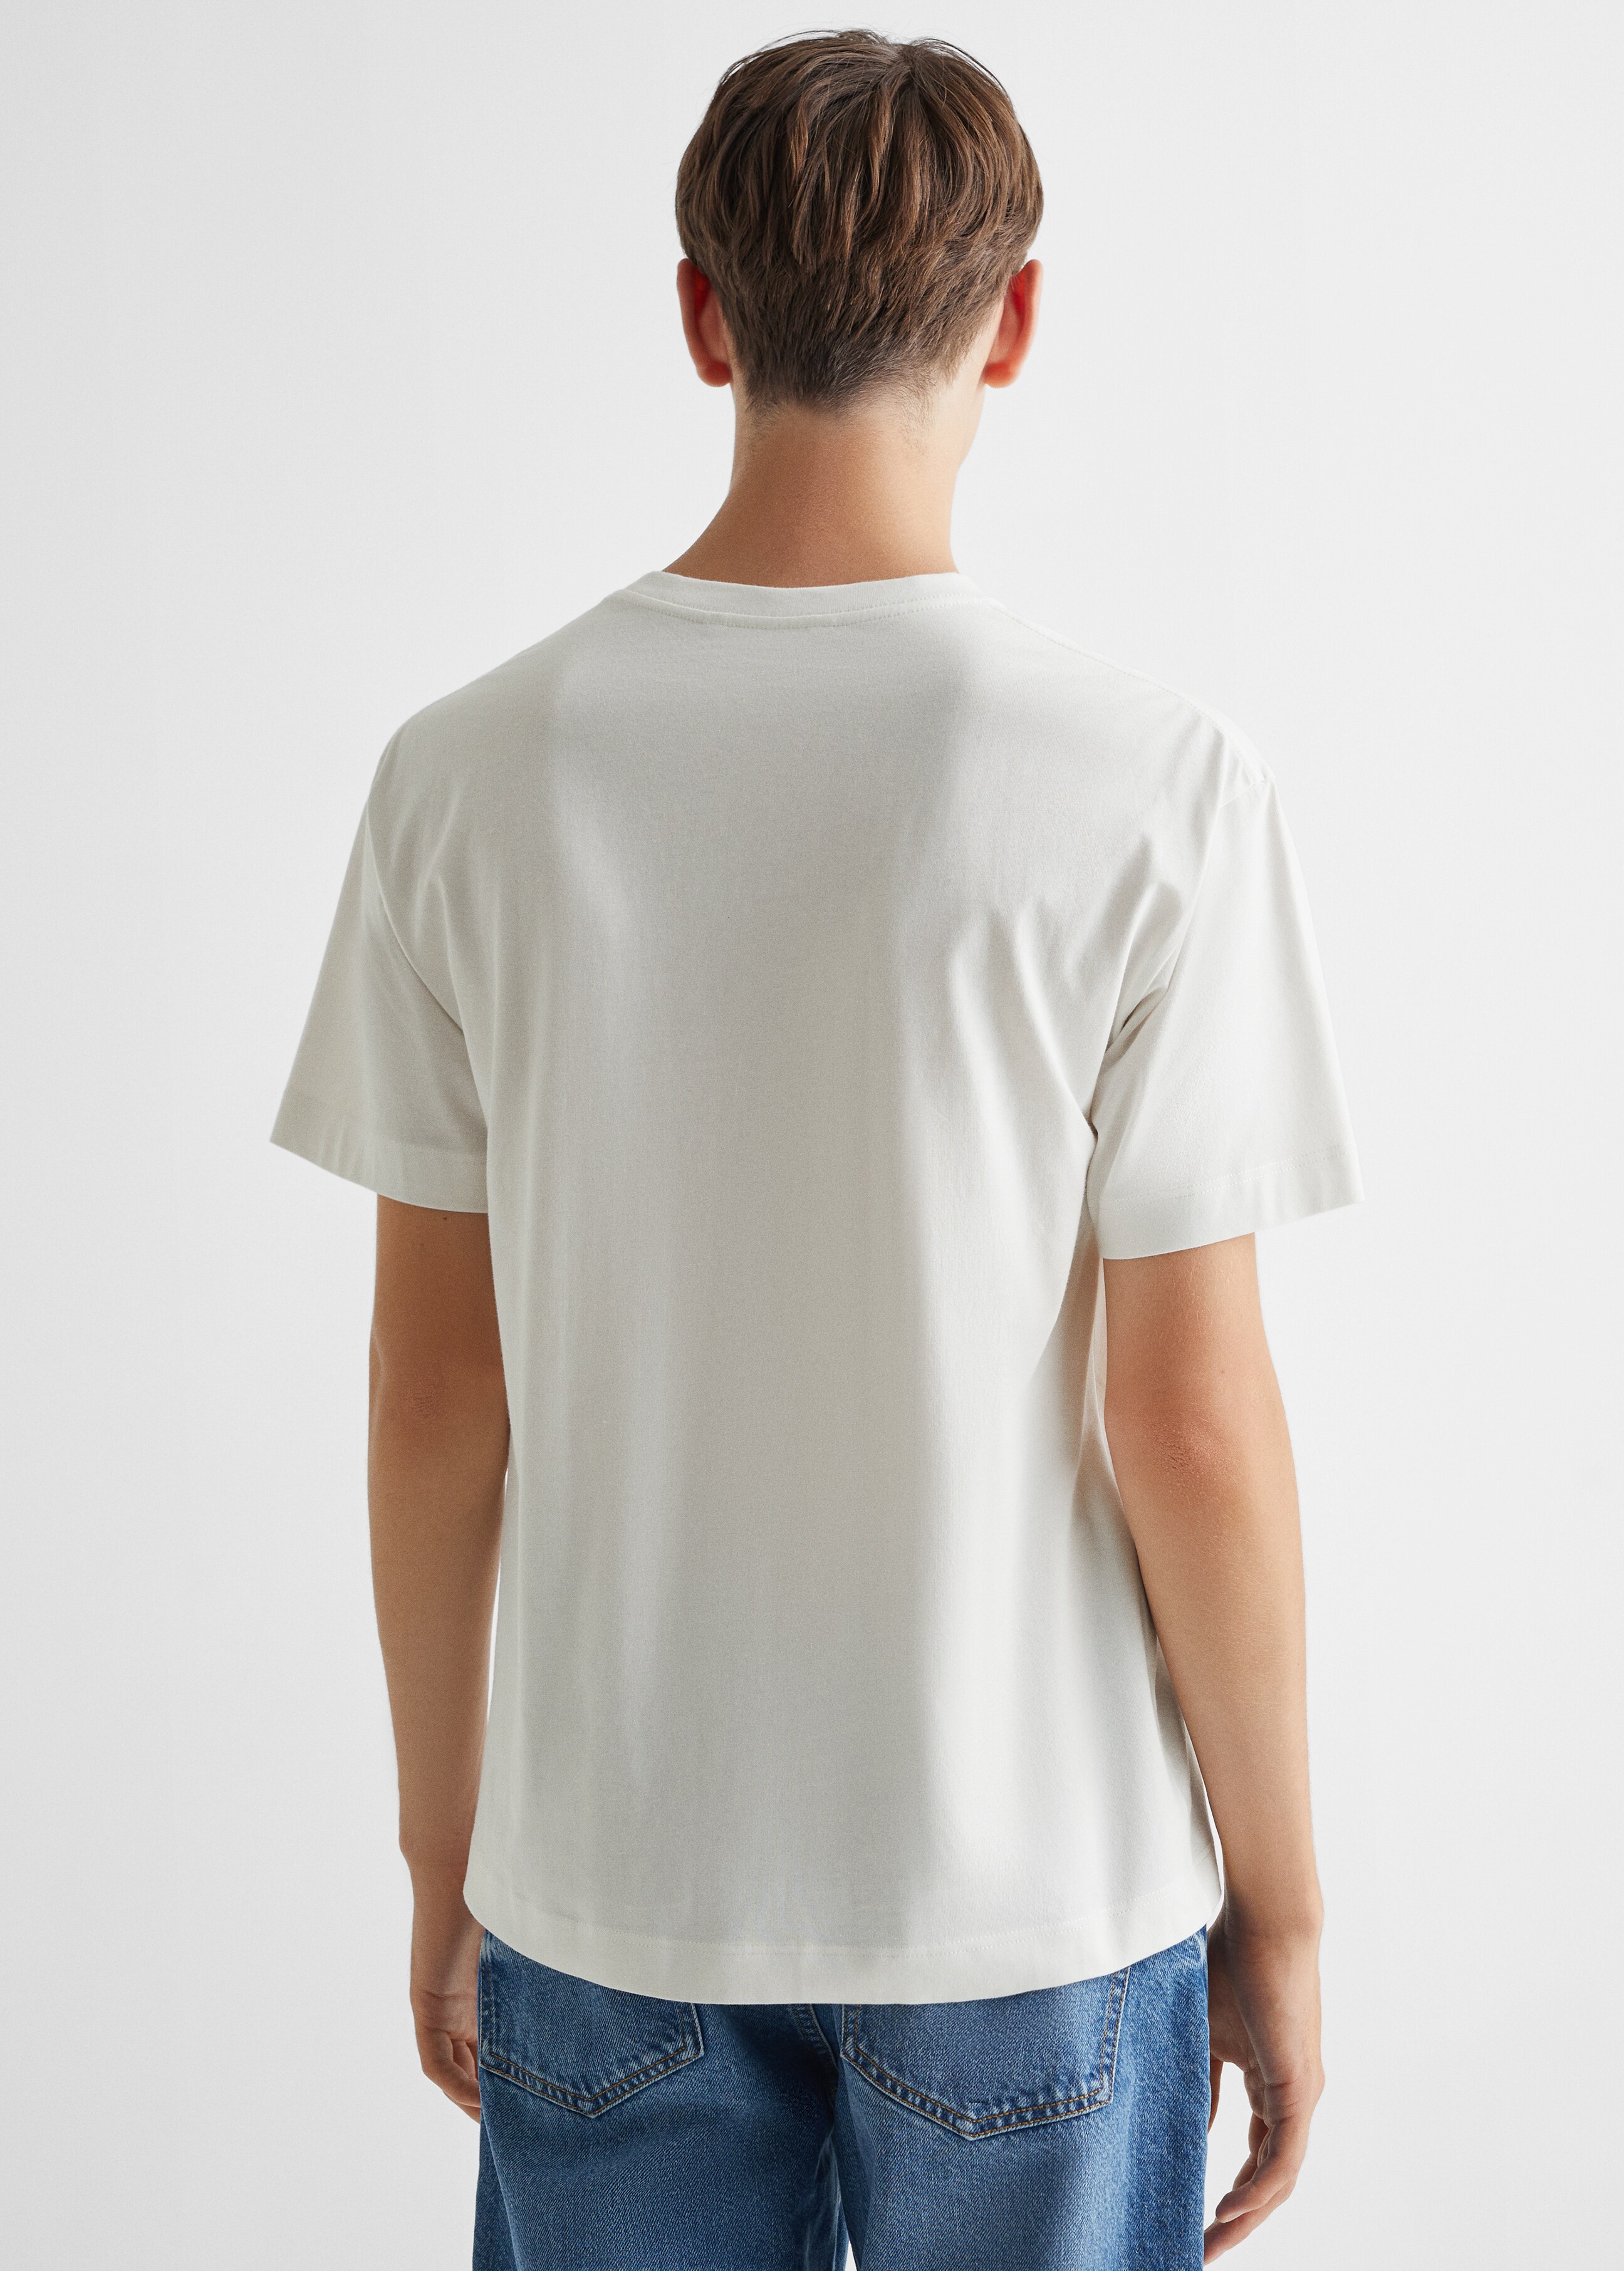 Camiseta algodón estampado - Reverso del artículo